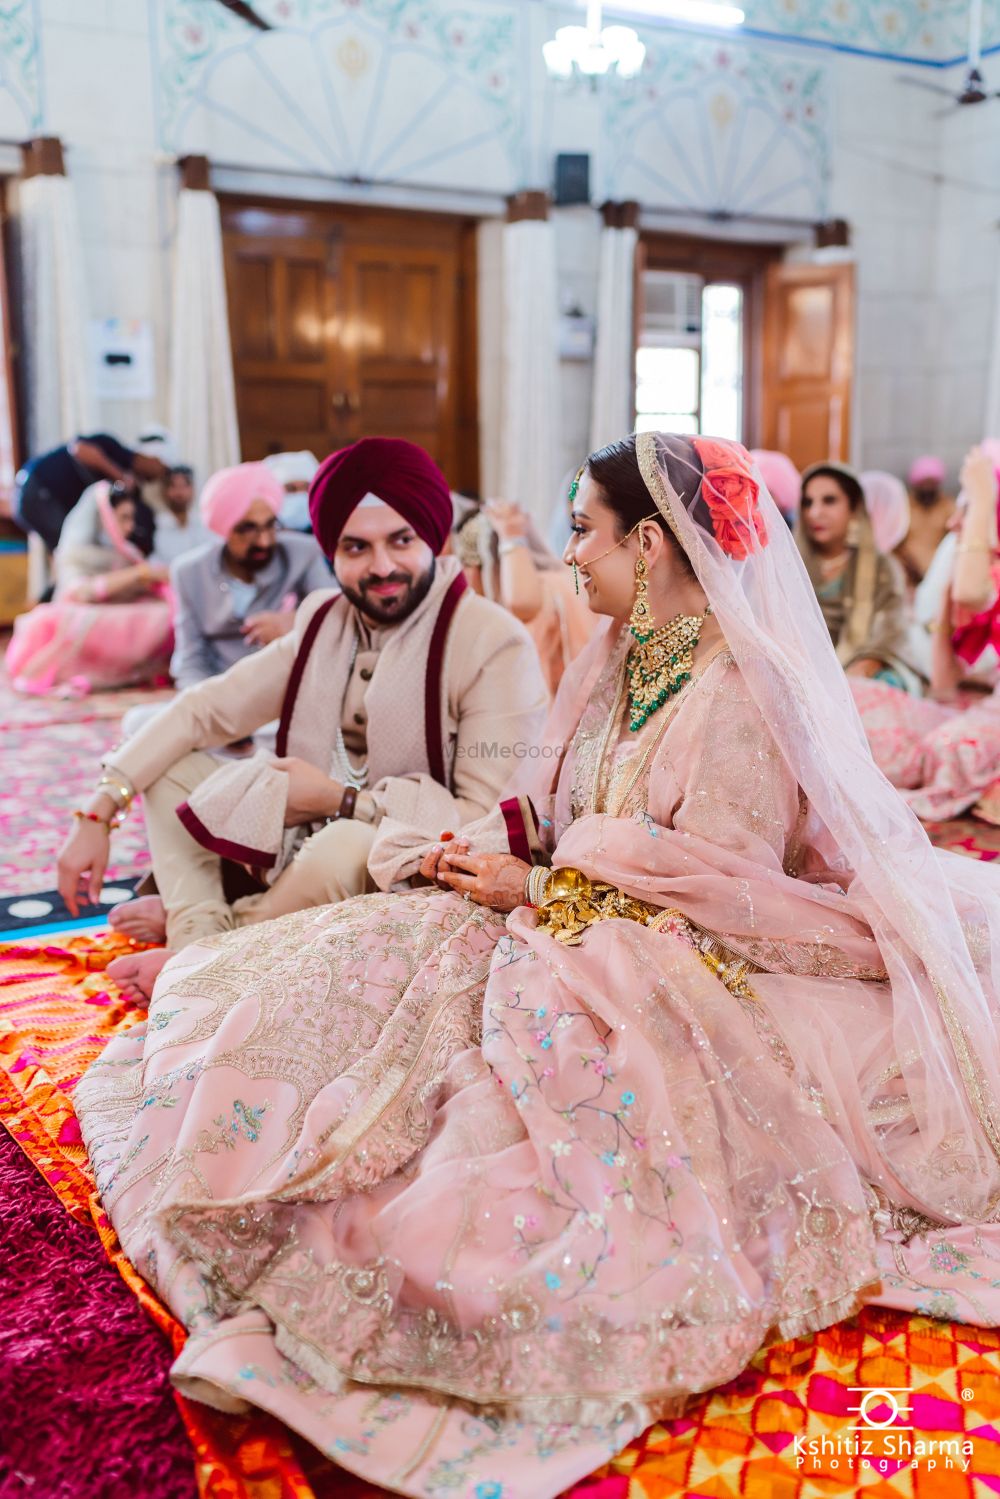 Photo From Wedding: Angad & Sanjna - By Kshitiz Sharma Photography